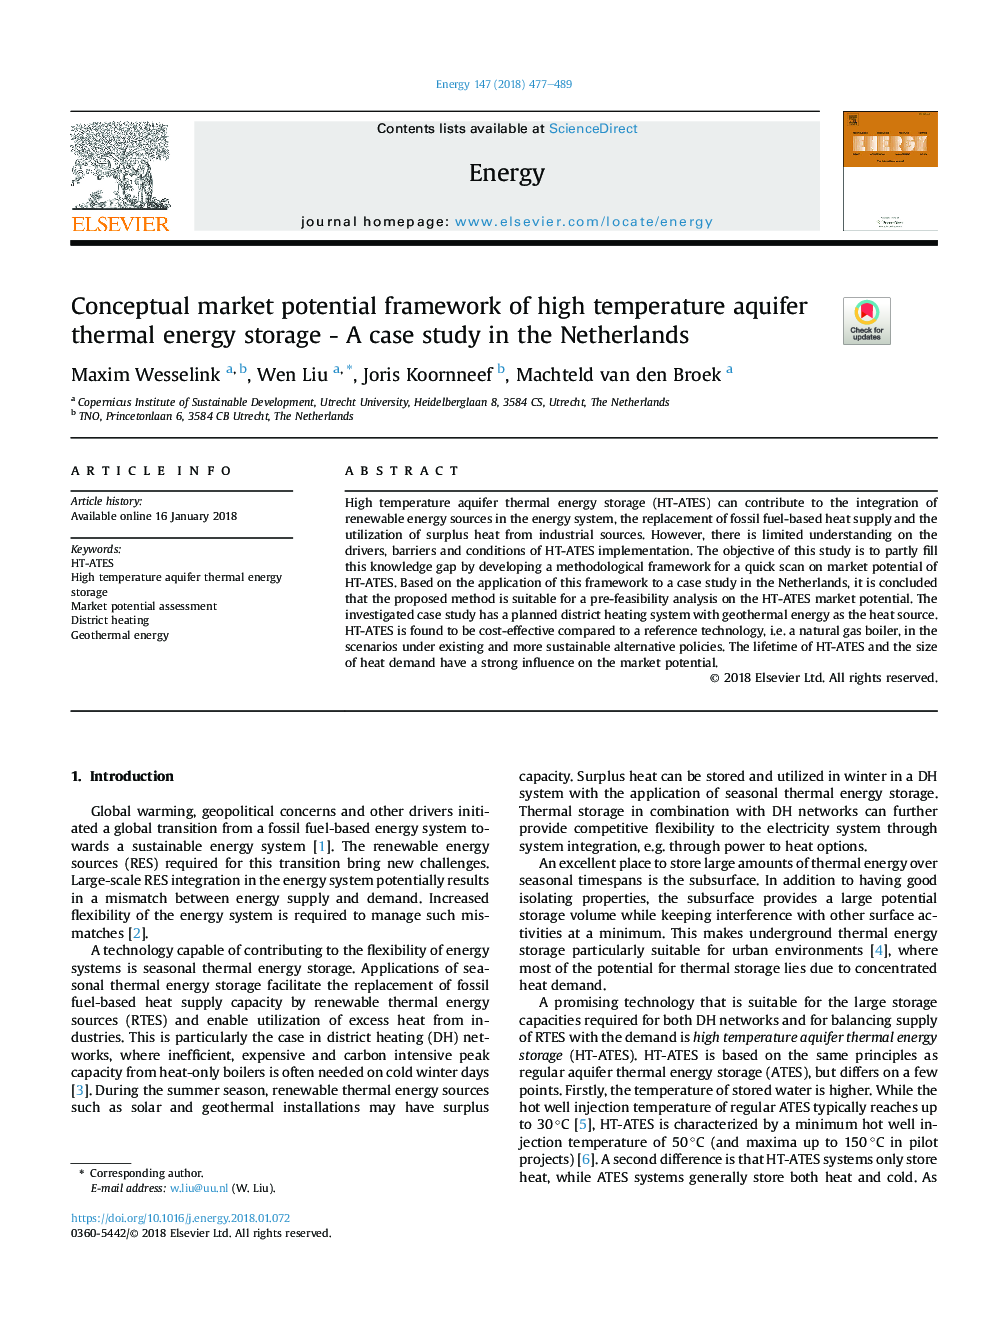 چارچوب پتانسیل بازار مفهوم ذخیره انرژی گرمایی آبخیزه با دمای بالا - مطالعه موردی در هلند 